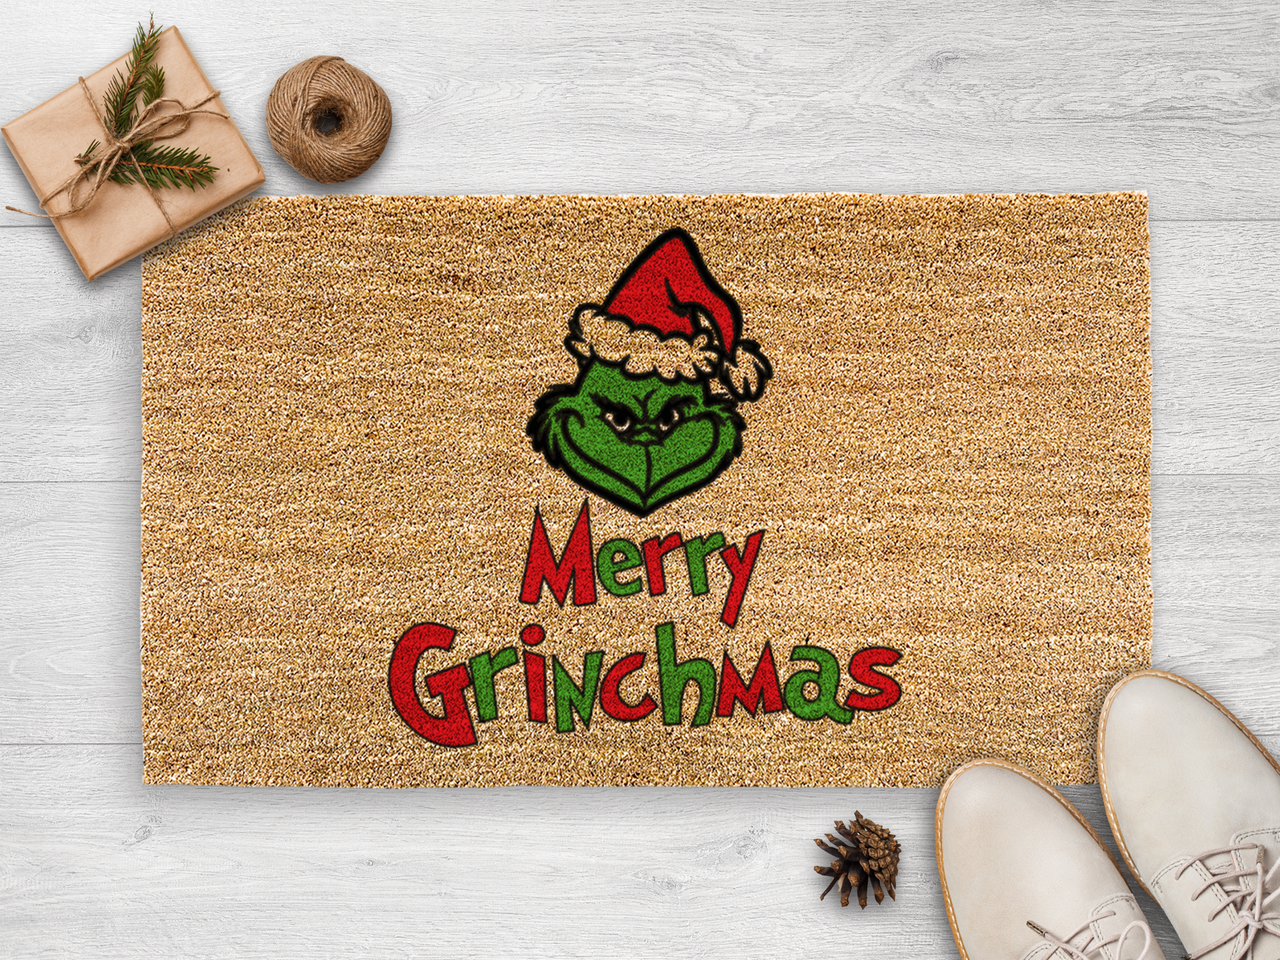 Merry Grinchmas - Grinch Home Decor - Grinch Doormat - Funny Holiday Doormat